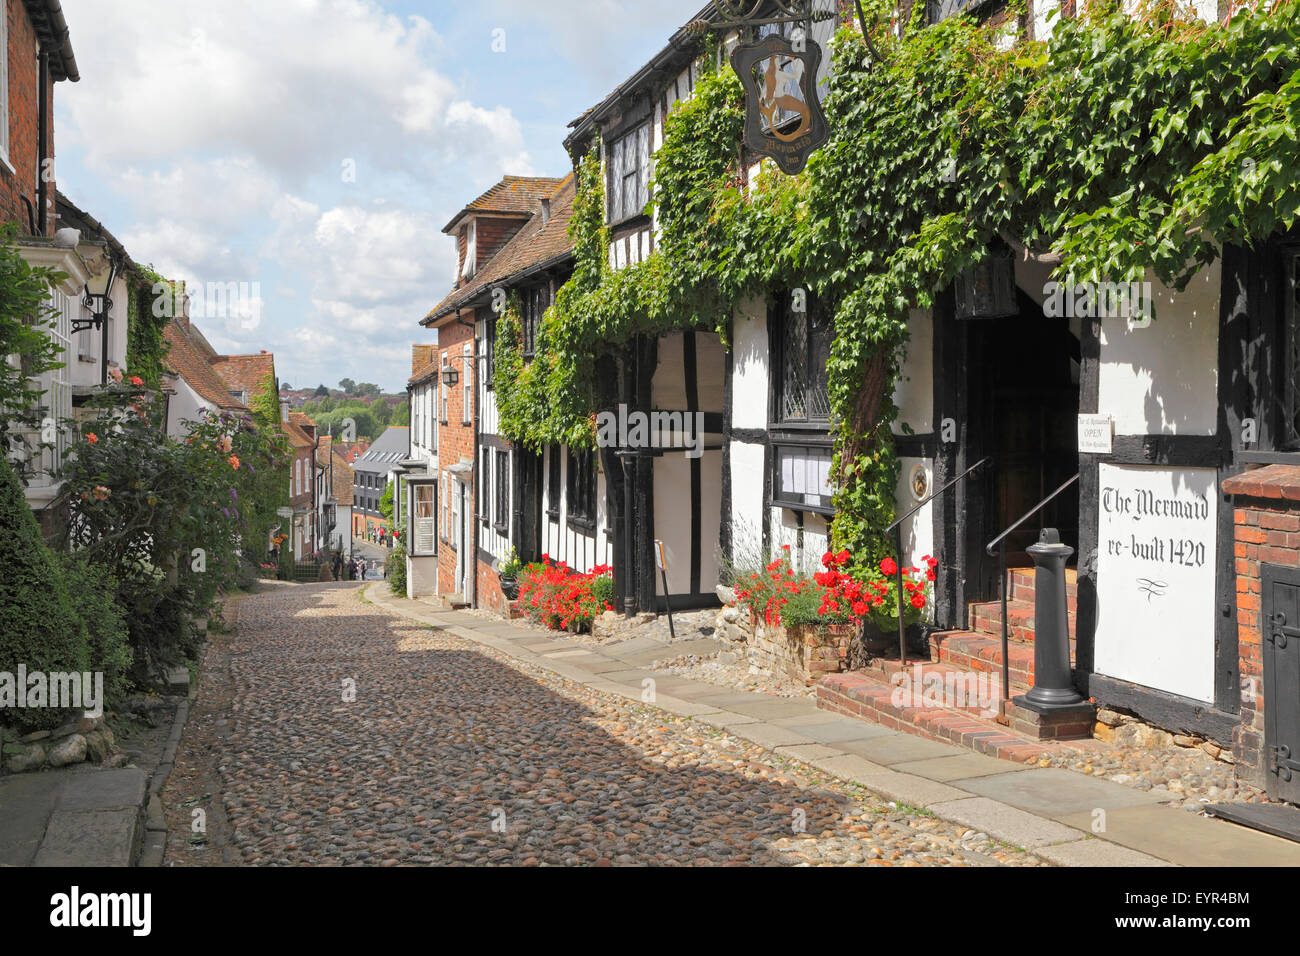 Le pittoresque, rue pavées, dans le quartier historique de Cinque Ports ville de Rye, East Sussex, England, UK Banque D'Images